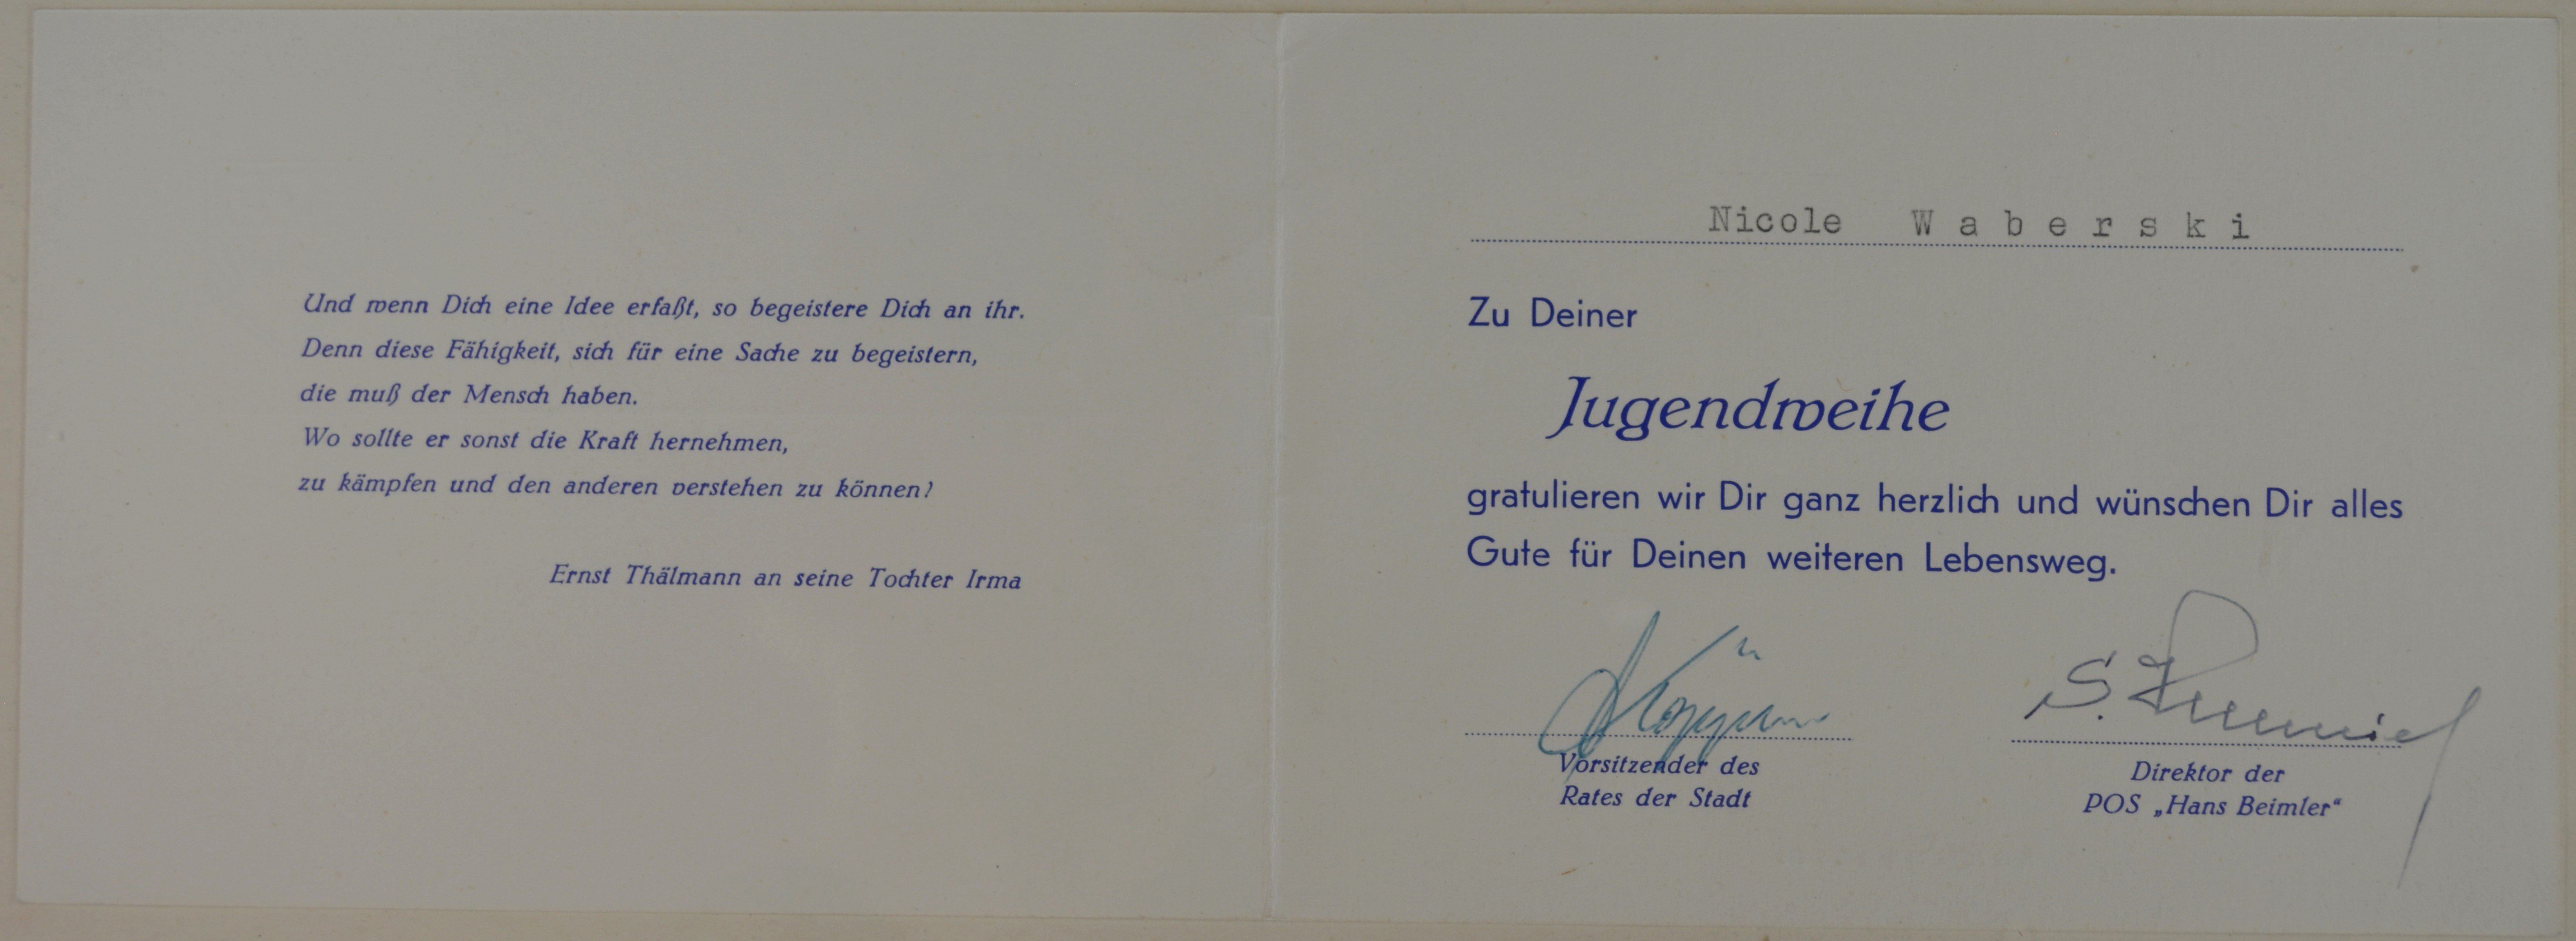 Glückwunschkarte zur Jugendweihe (DDR Geschichtsmuseum im Dokumentationszentrum Perleberg CC BY-SA)